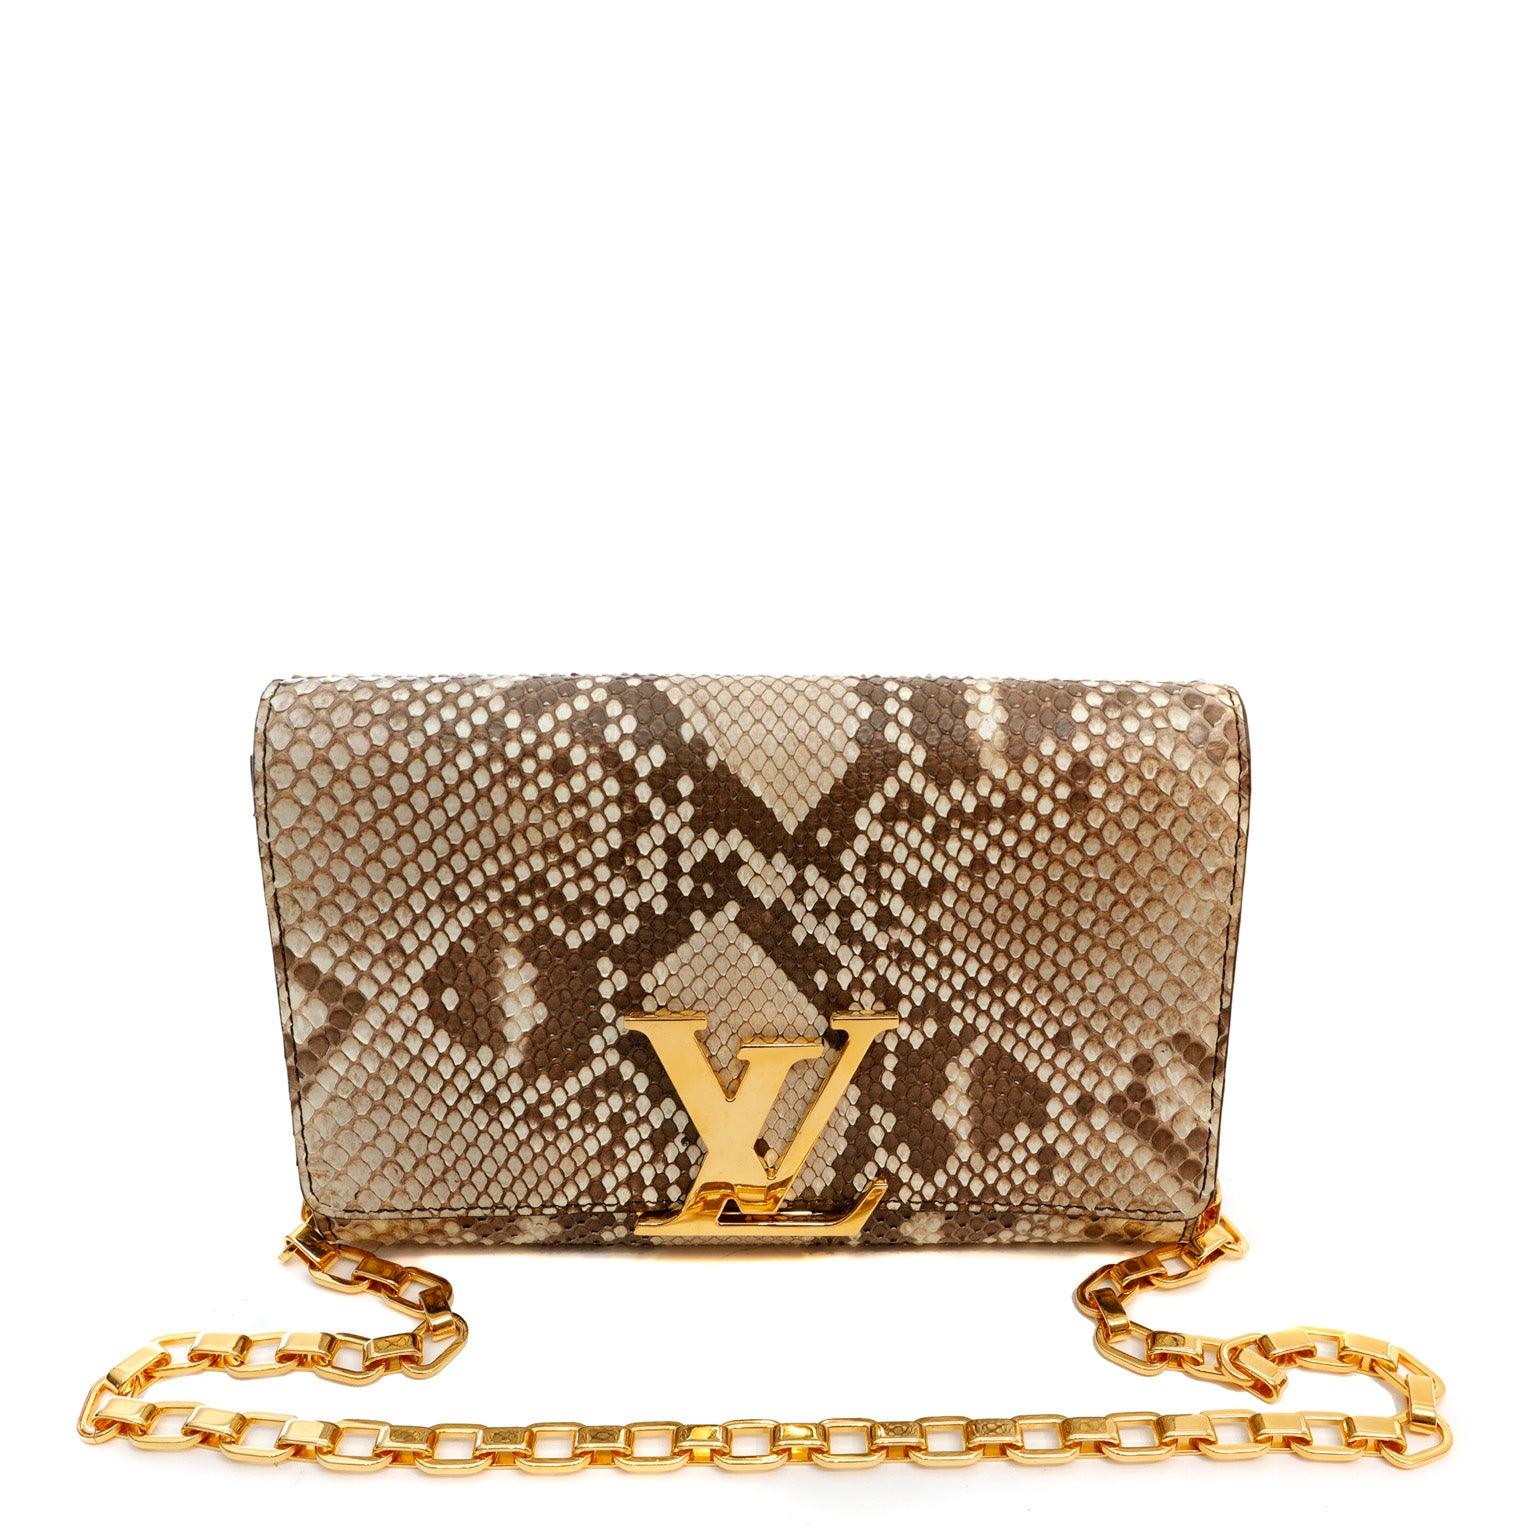 Louis Vuitton Louise Long Necklace Gold Bracelet Chain